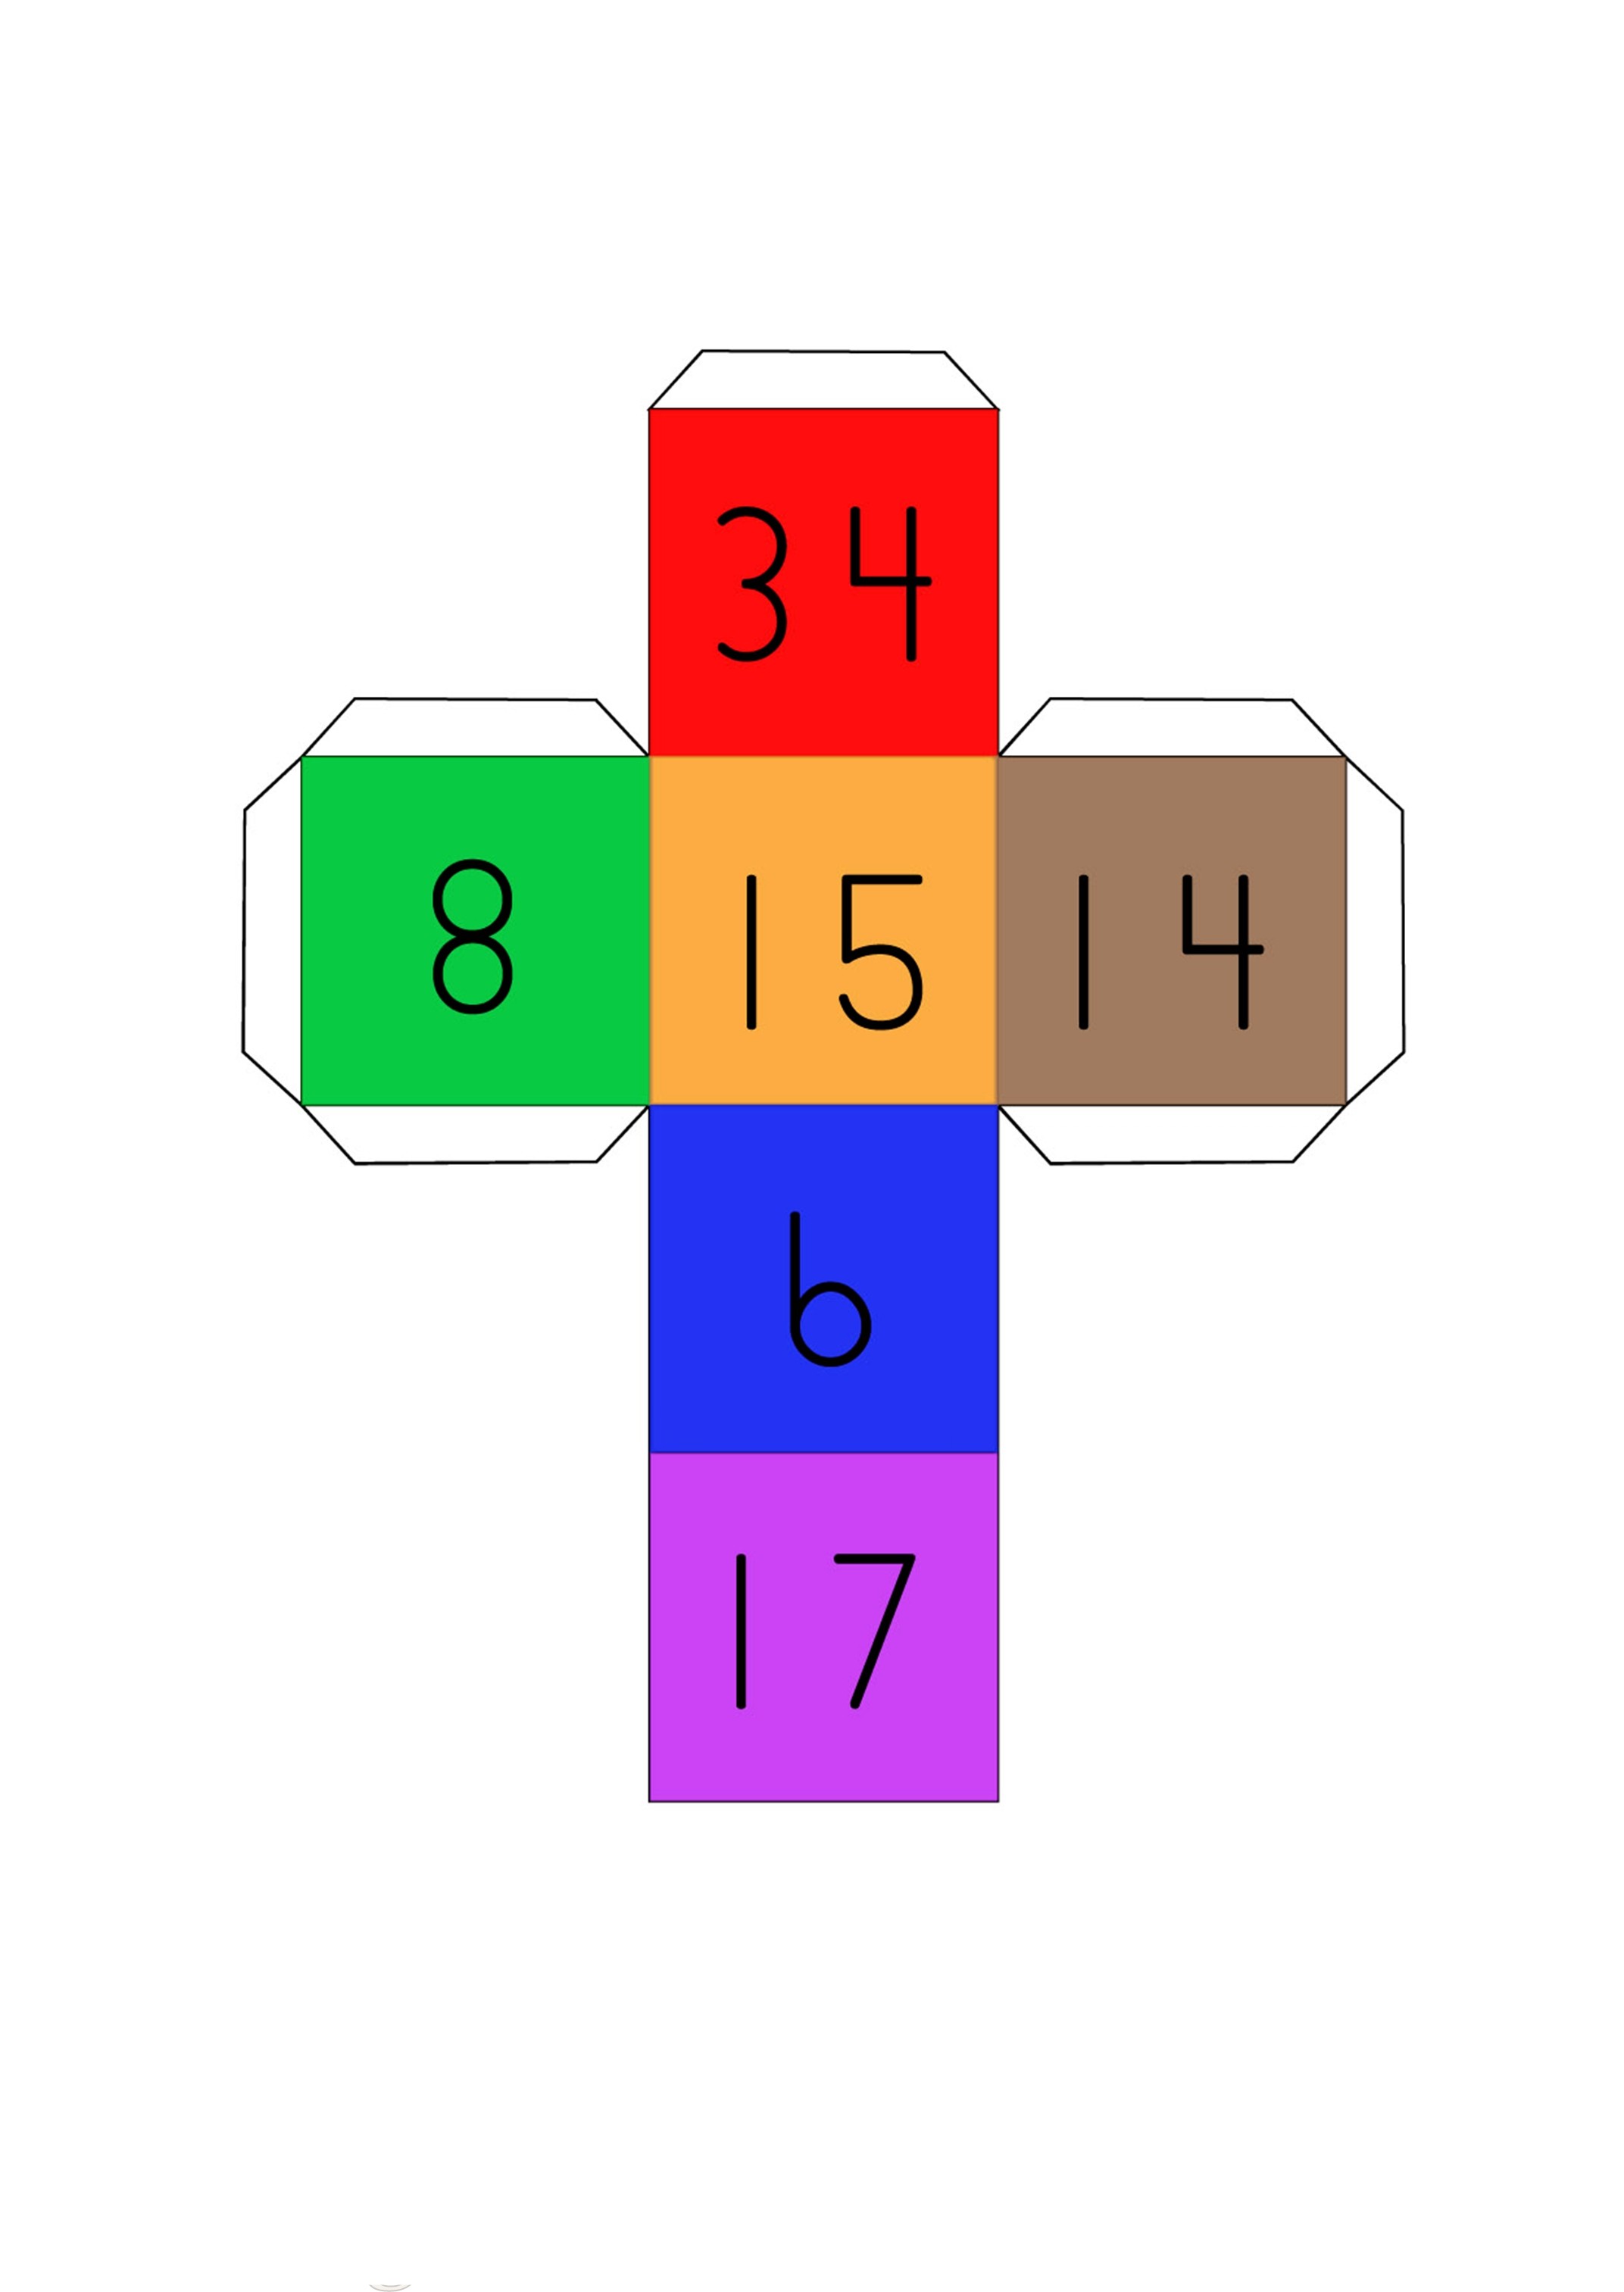 Matemaatikaga seotud mängud Cubico17